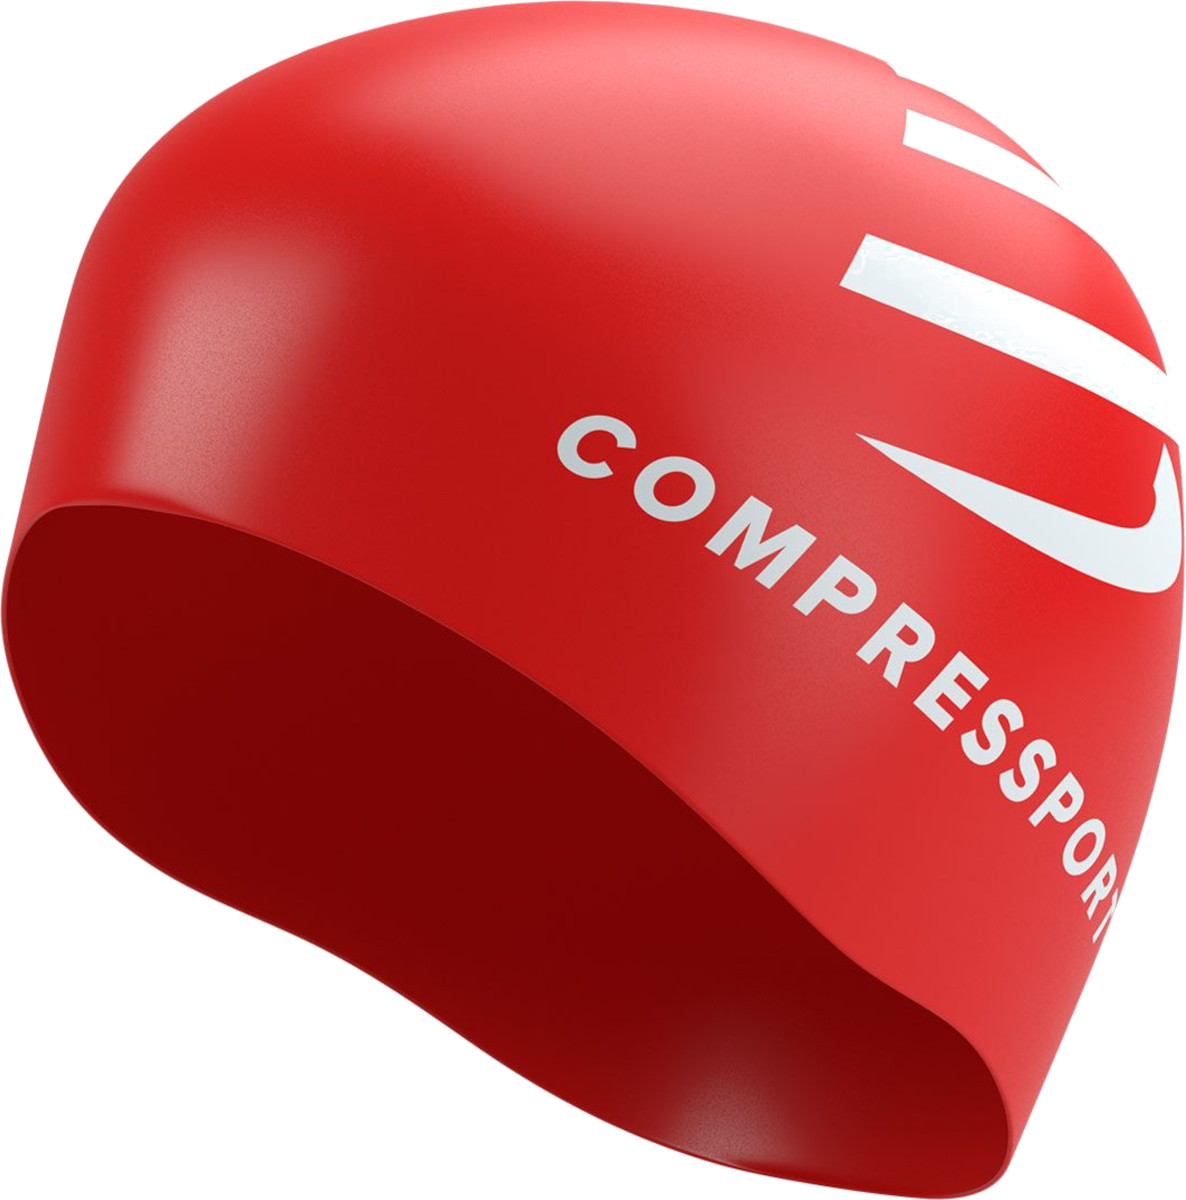 Bonnet Compressport Swim cap